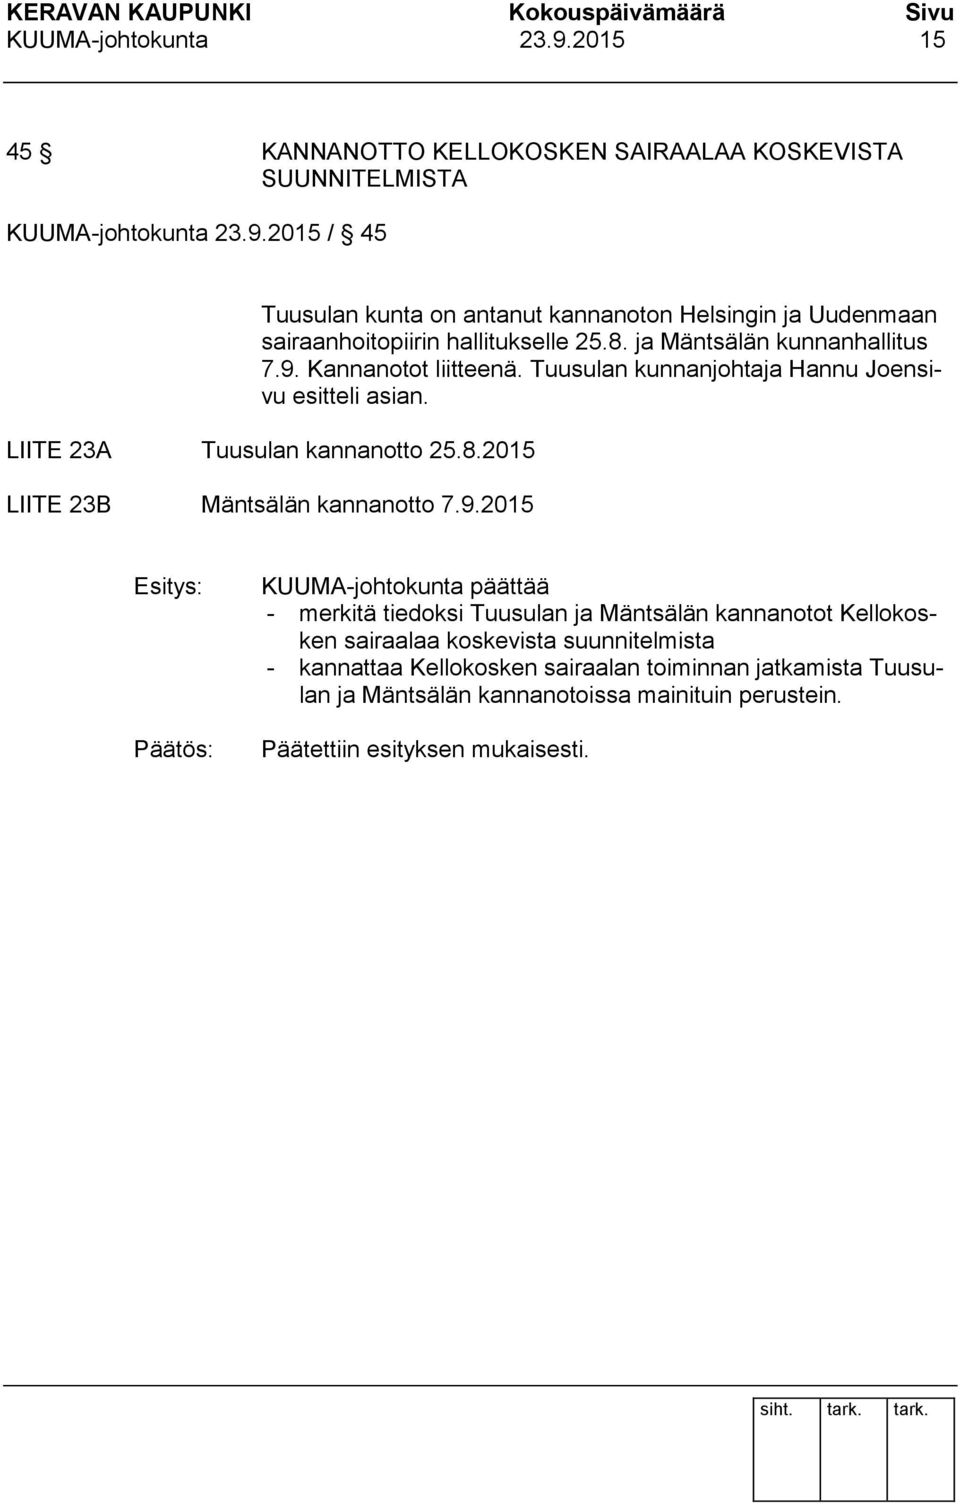 9.2015 Esitys: KUUMA-johtokunta päättää - merkitä tiedoksi Tuusulan ja Mäntsälän kannanotot Kellokosken sairaalaa koskevista suunnitelmista - kannattaa Kellokosken